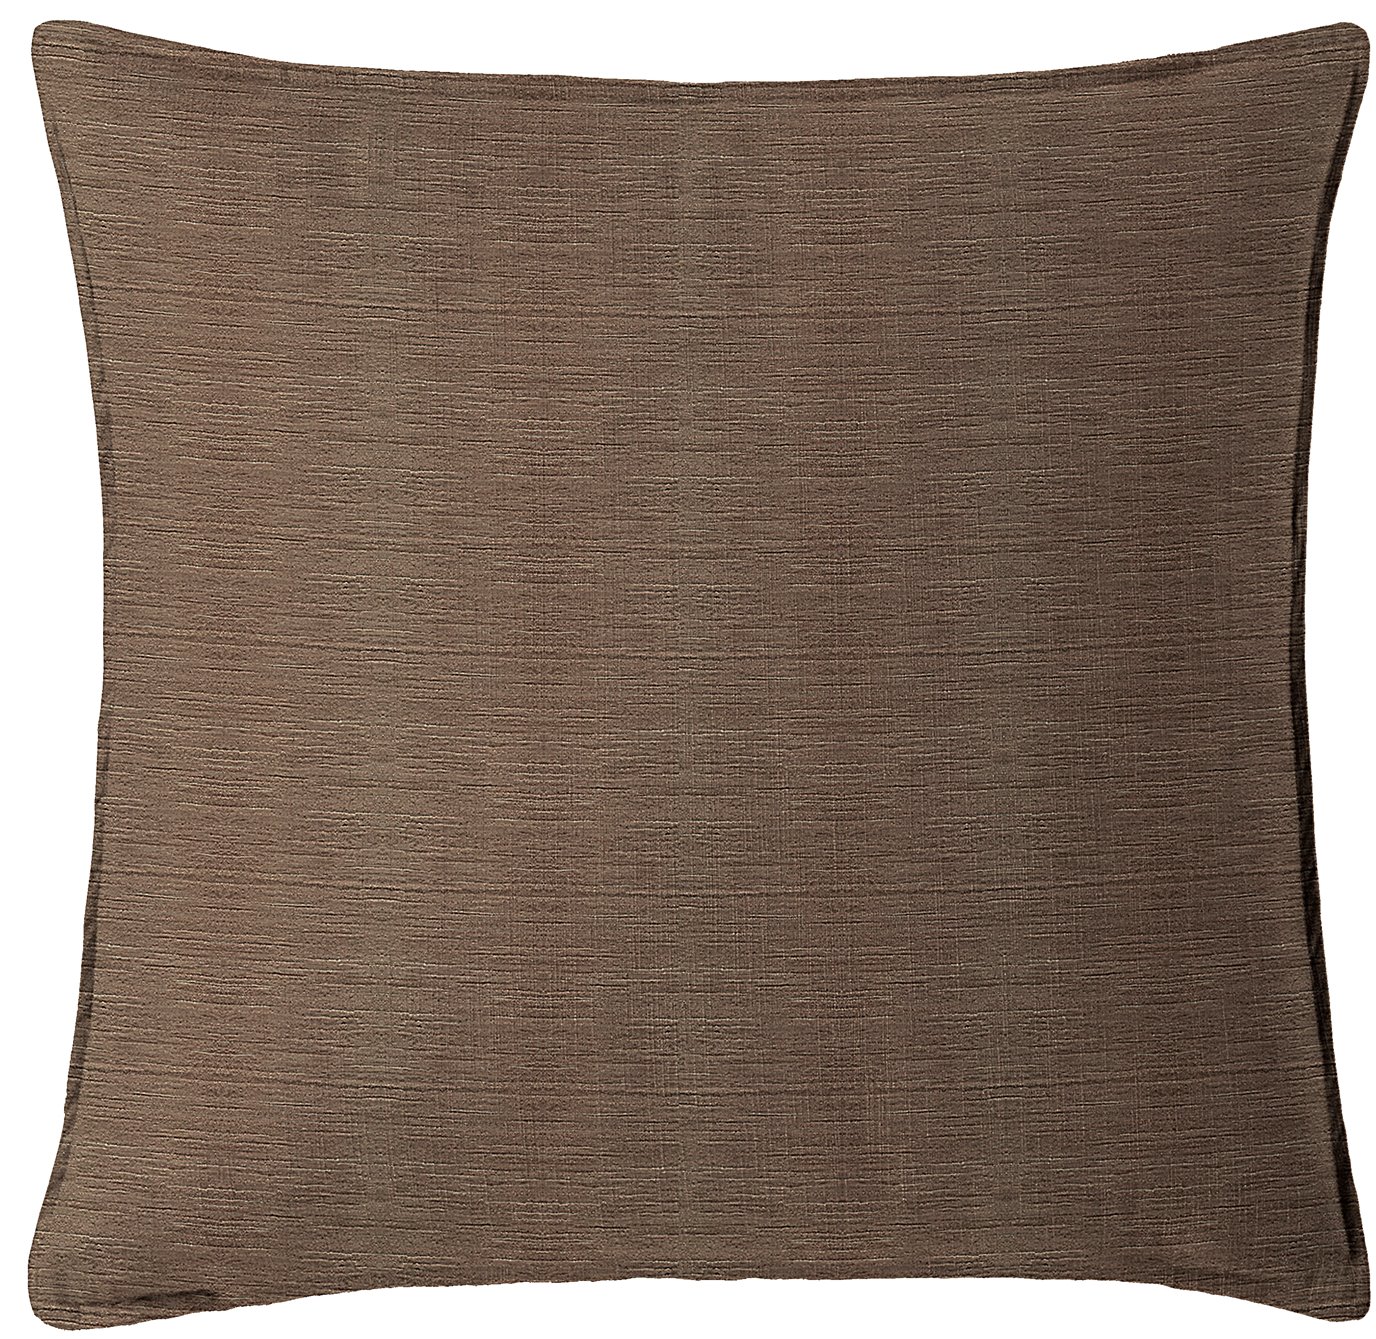 McGregor Chocolate Square Pillow 24"x24"